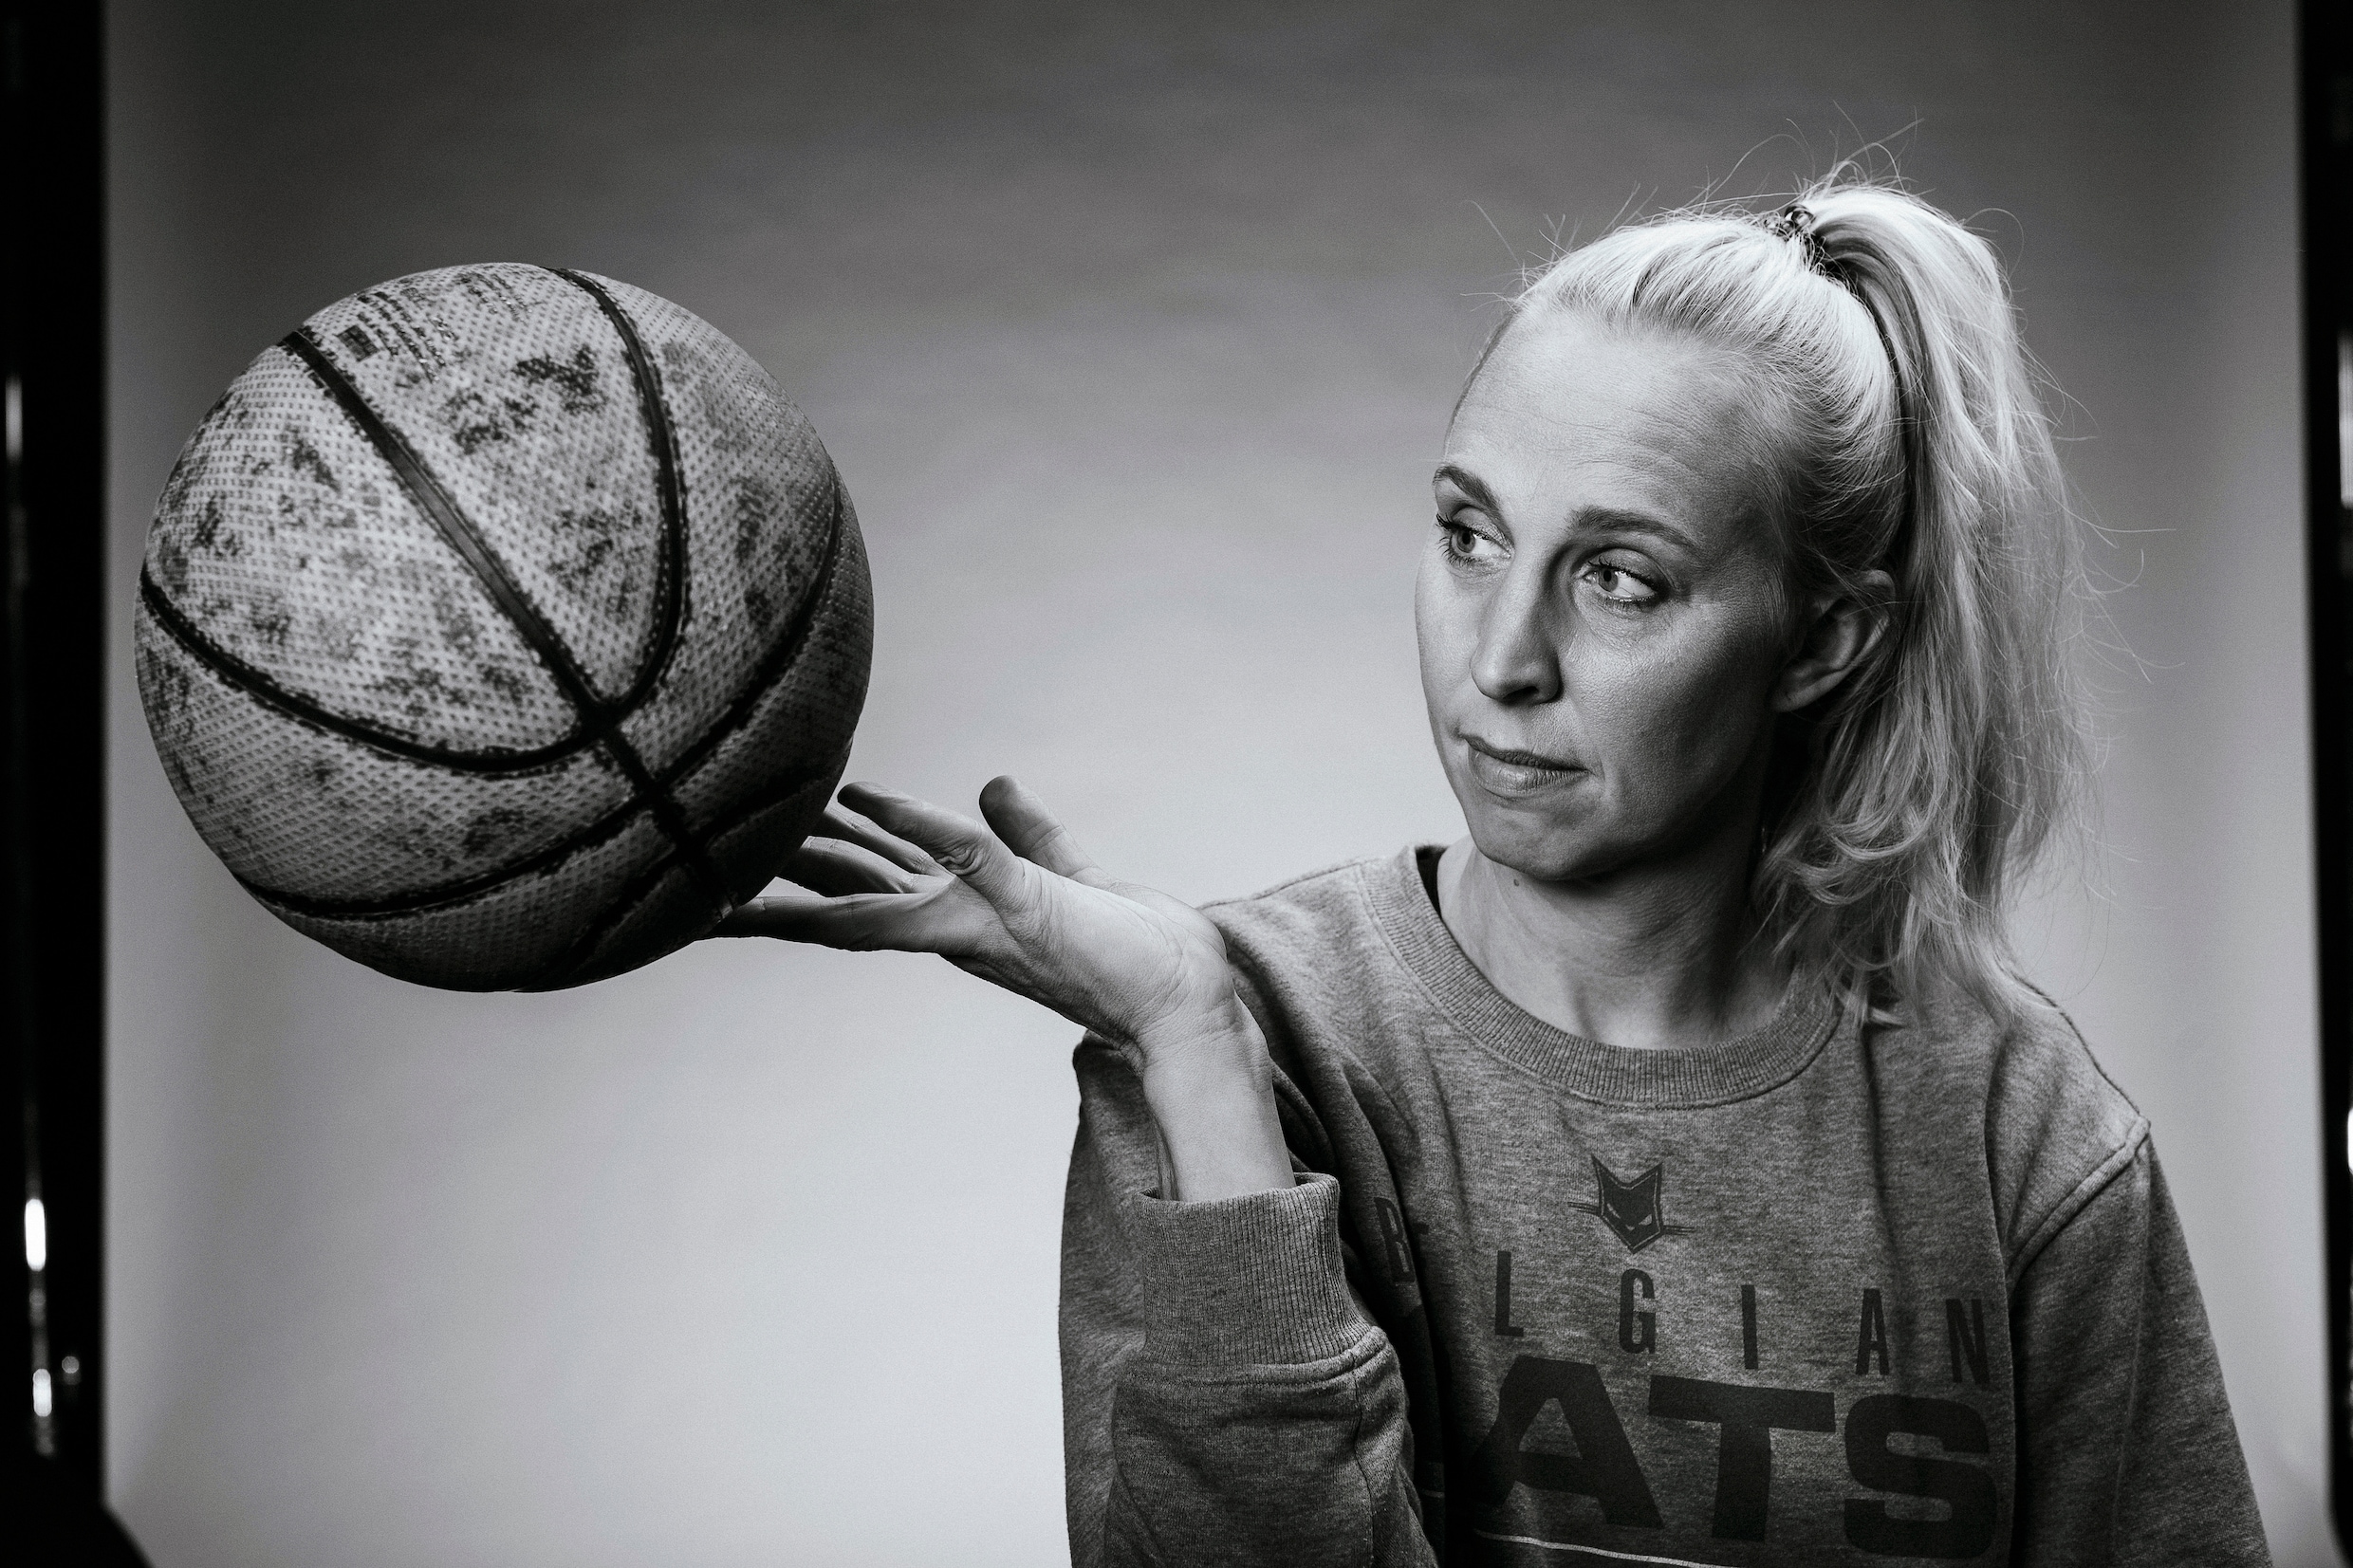 Basketbaltopper Ann Wauters: “Misschien had ik iets prominenter een rolmodel moeten zijn”